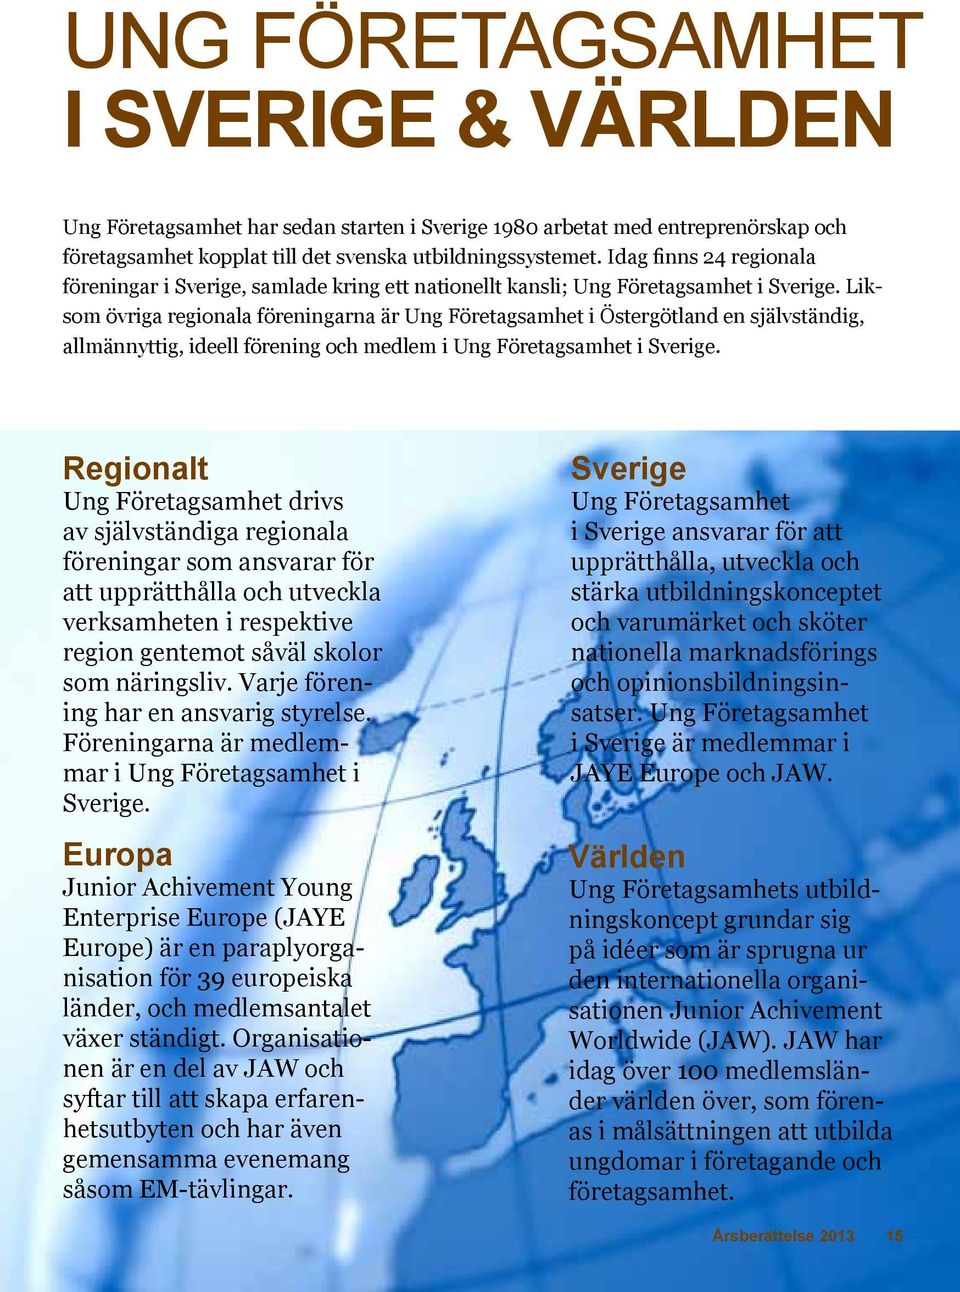 Liksom övriga regionala föreningarna är Ung Företagsamhet i Östergötland en självständig, allmännyttig, ideell förening och medlem i Ung Företagsamhet i Sverige.